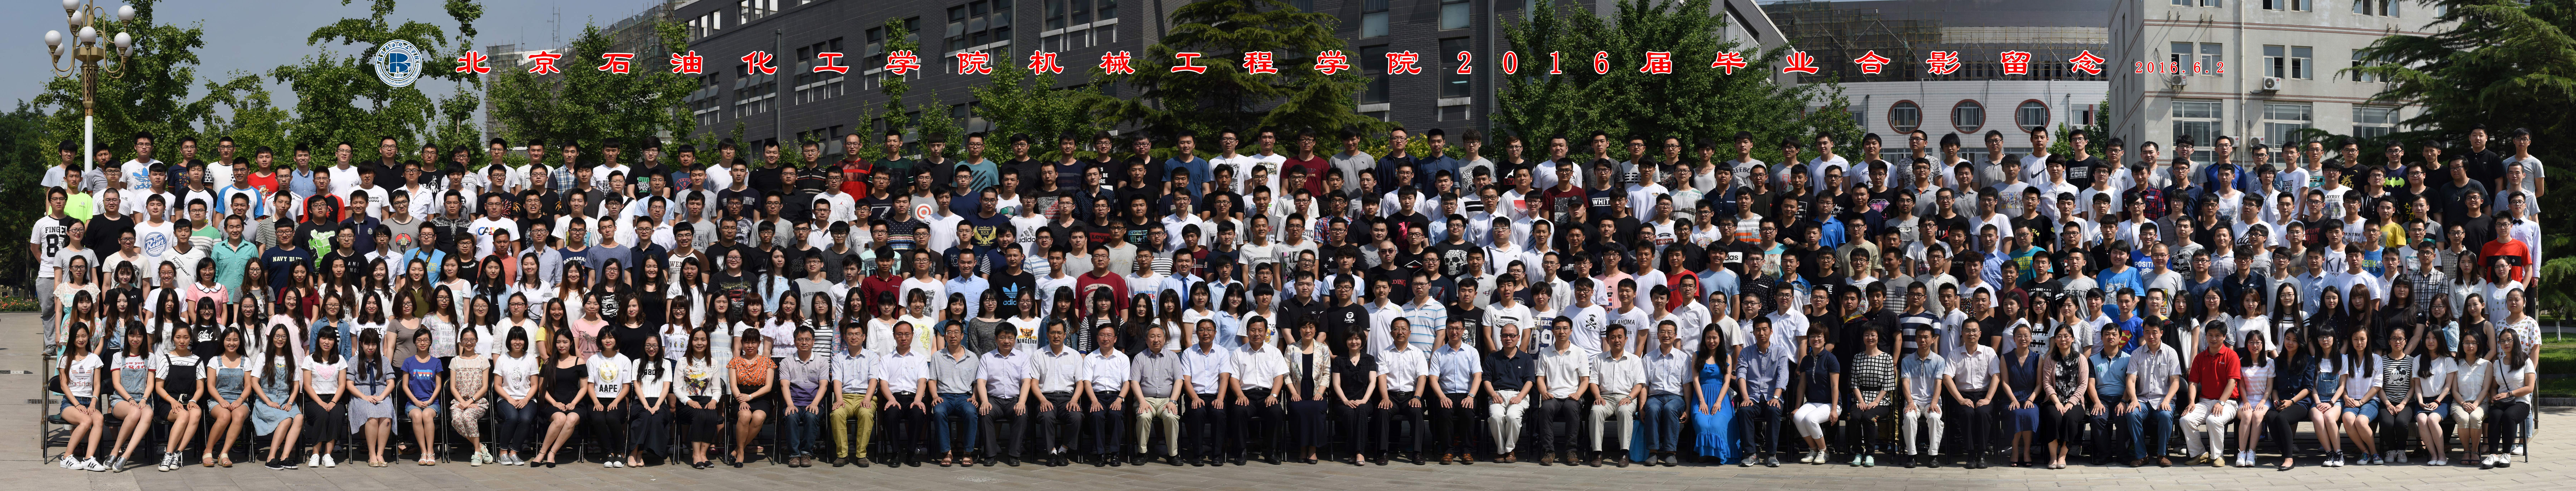 北京石油化工学院机械工程学院2016届毕业生合影-1.jpg